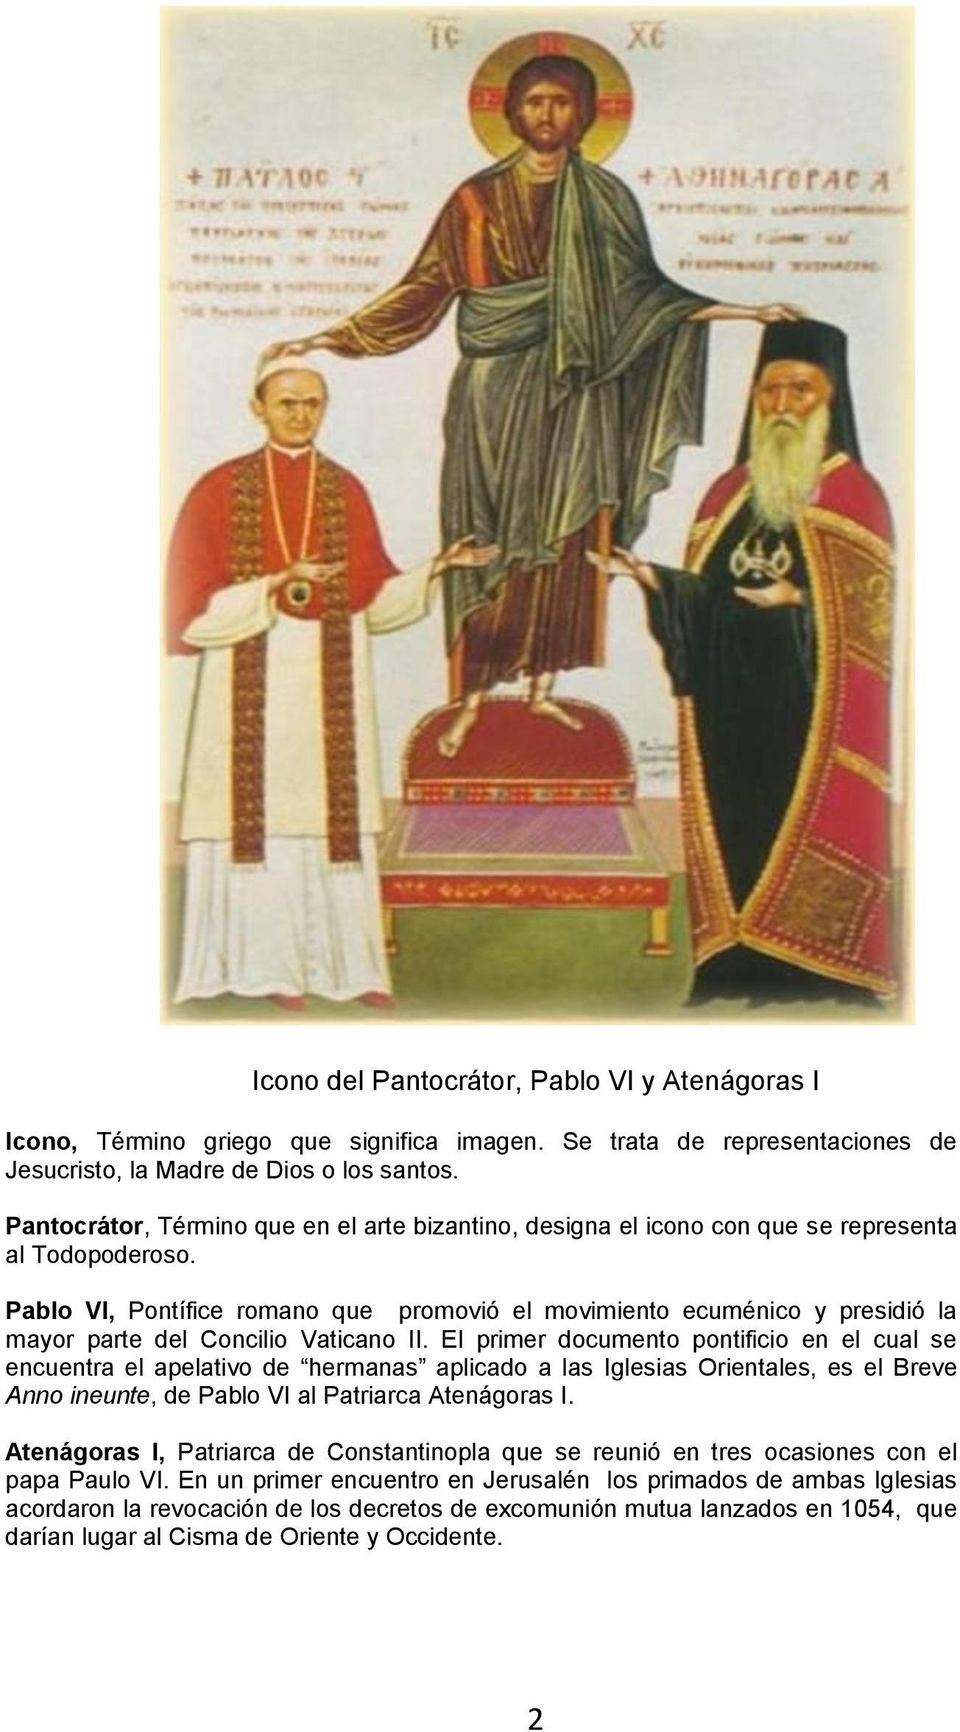 Pablo VI, Pontífice romano que promovió el movimiento ecuménico y presidió la mayor parte del Concilio Vaticano II.